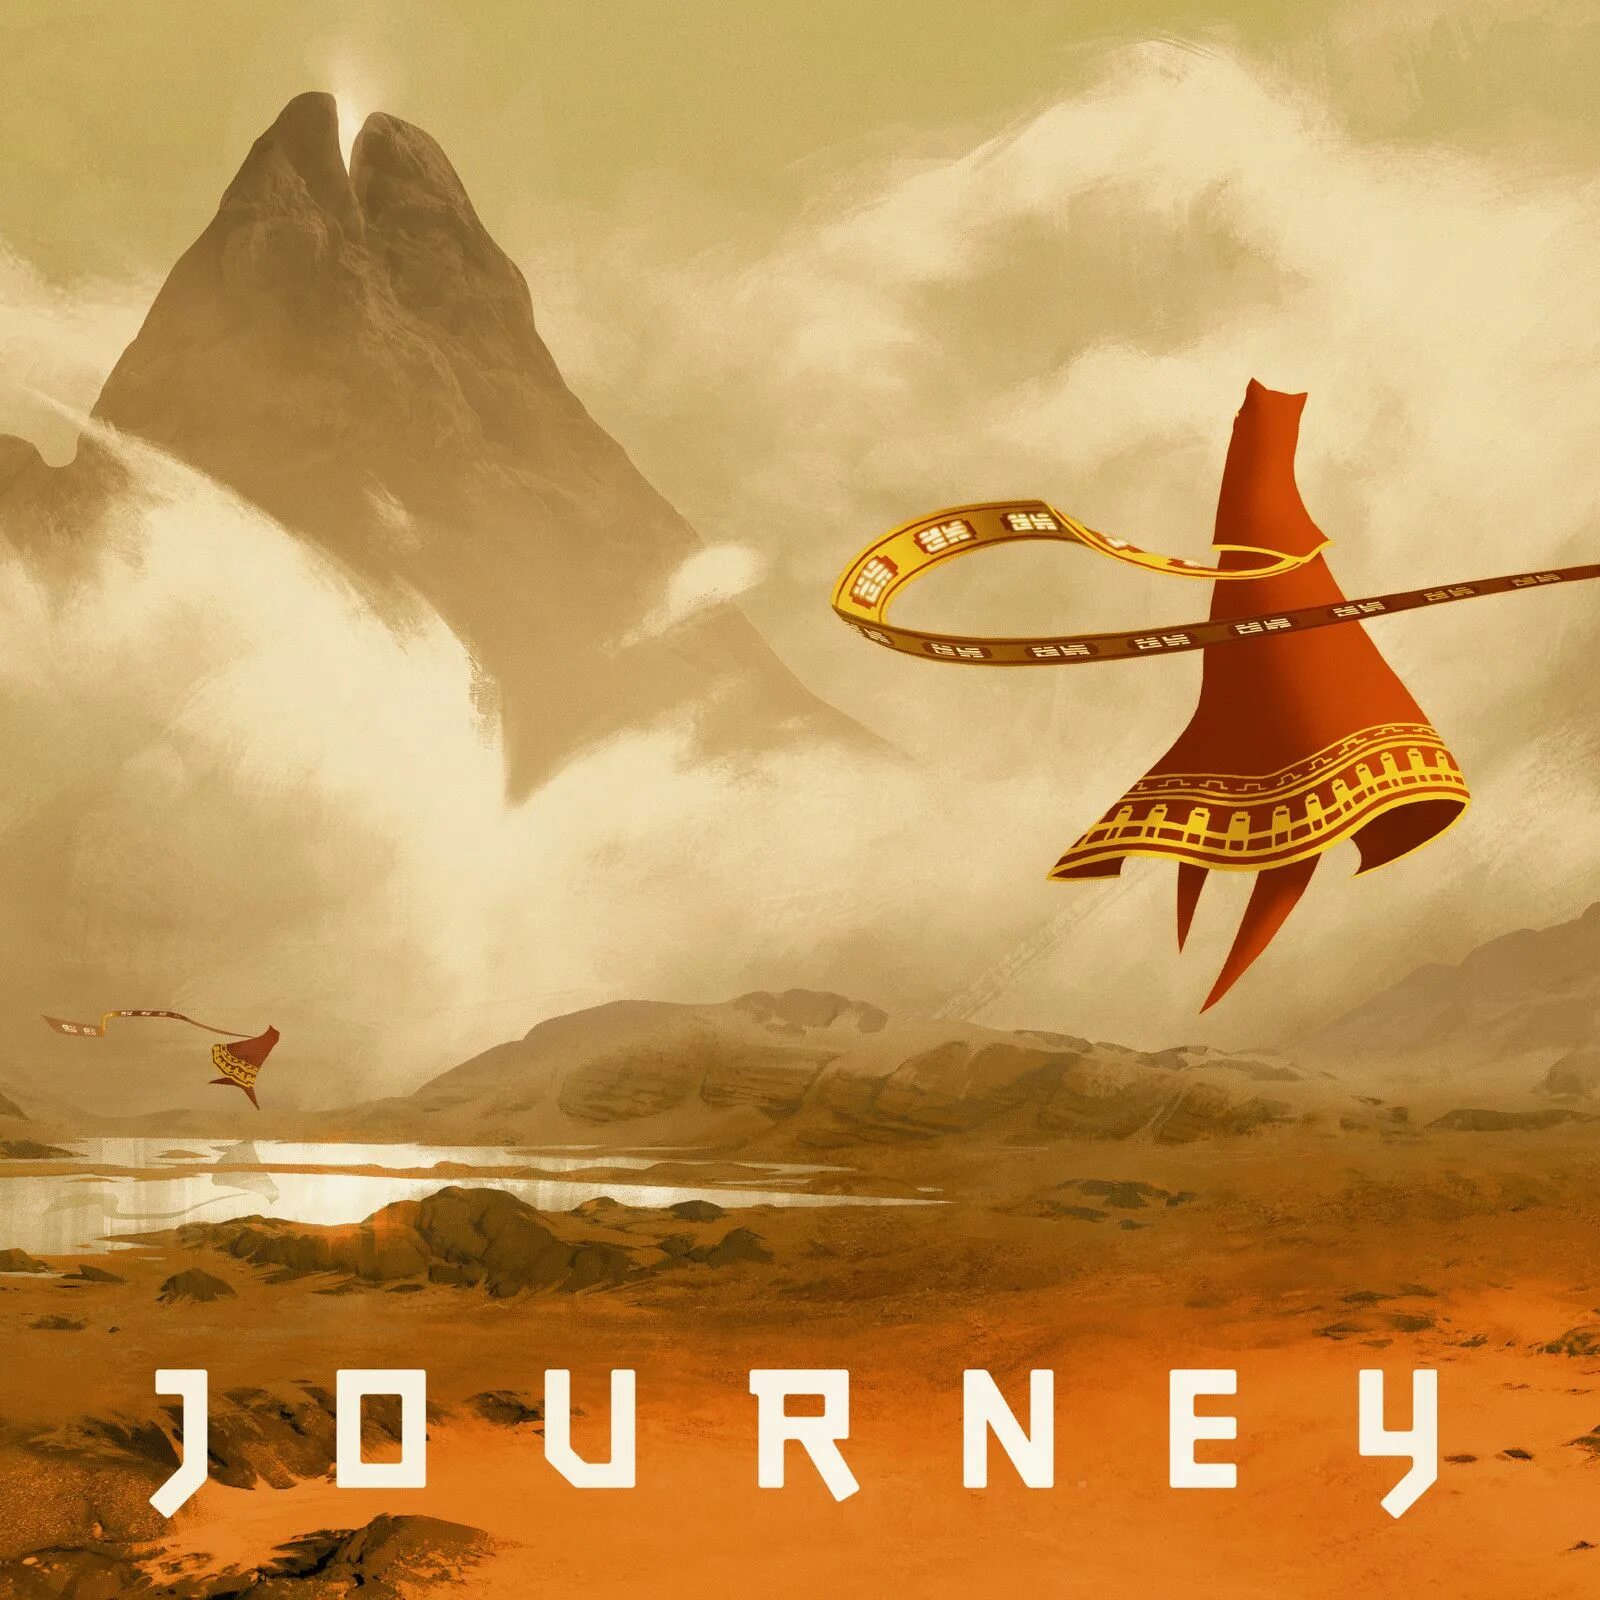 Journey (игра, 2012). Journey thatgamecompany. Путешествие игра Journey. Джорни путешествие игра. May journey